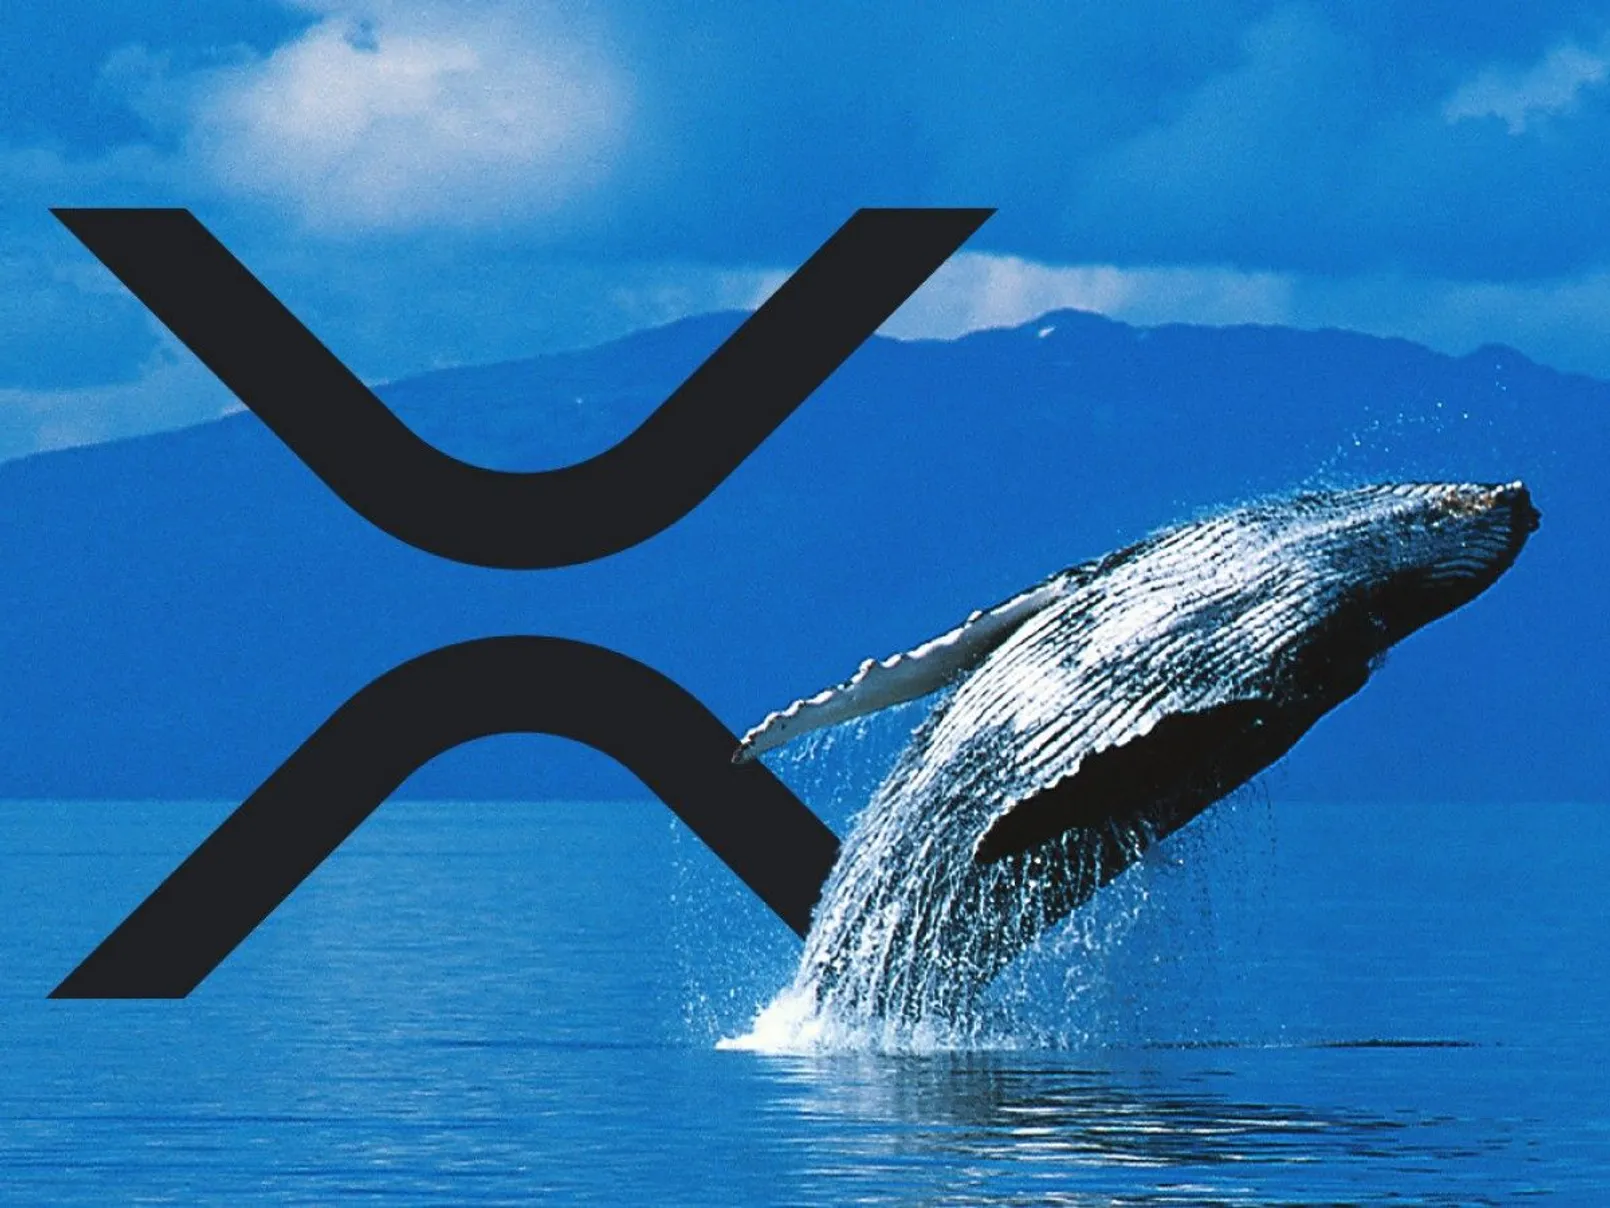 Xrp Whale.jpg